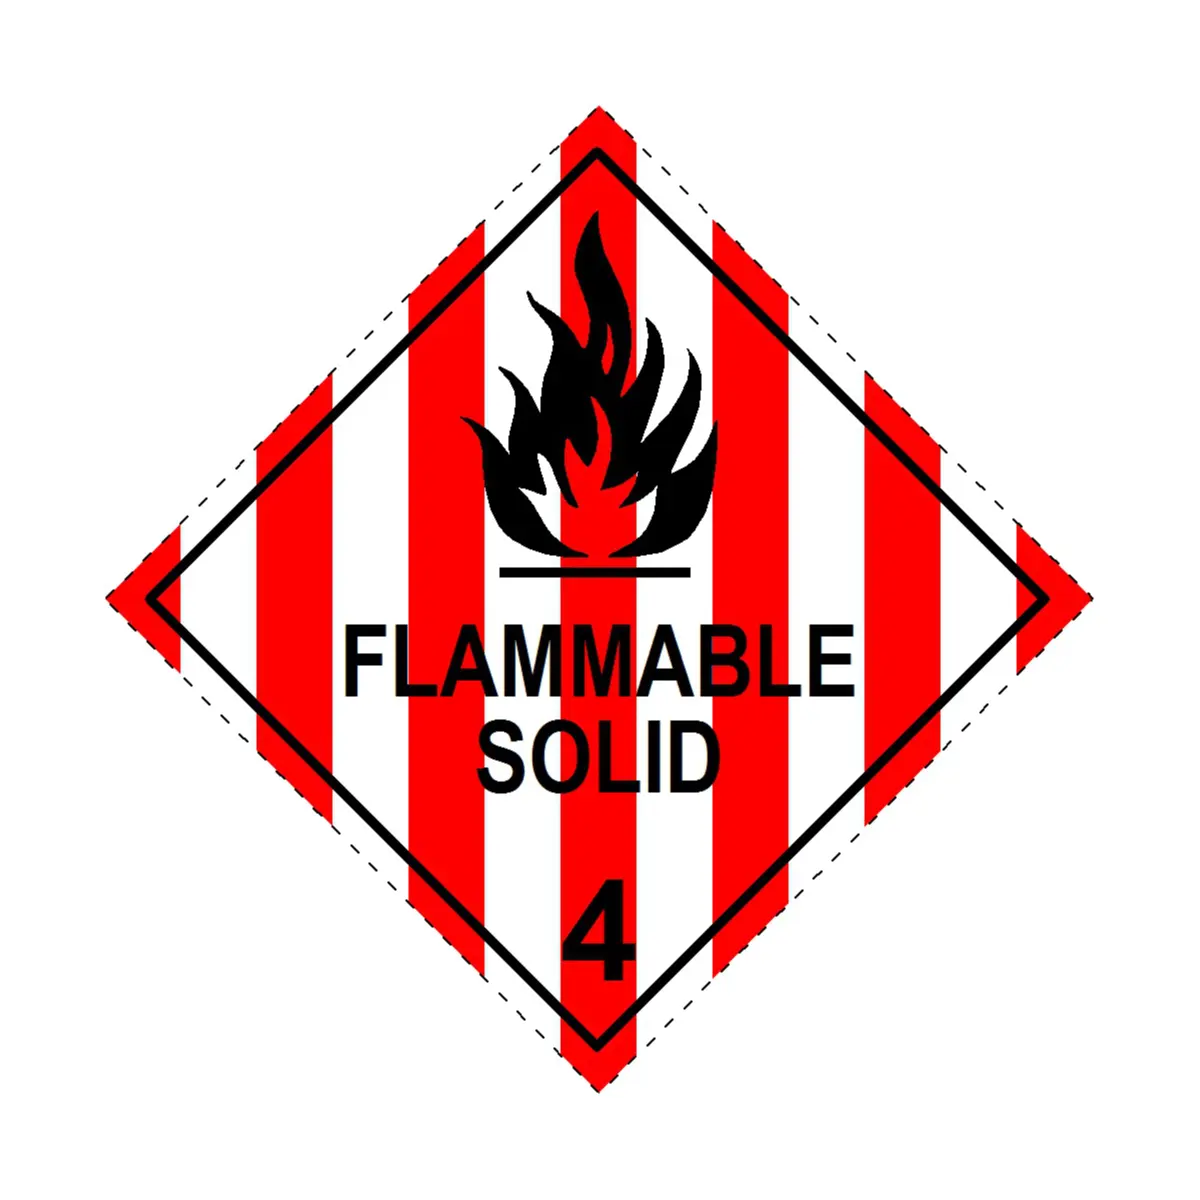 Materiais Perigosos Placards Classe 4 Etiqueta Sólidos Inflamáveis